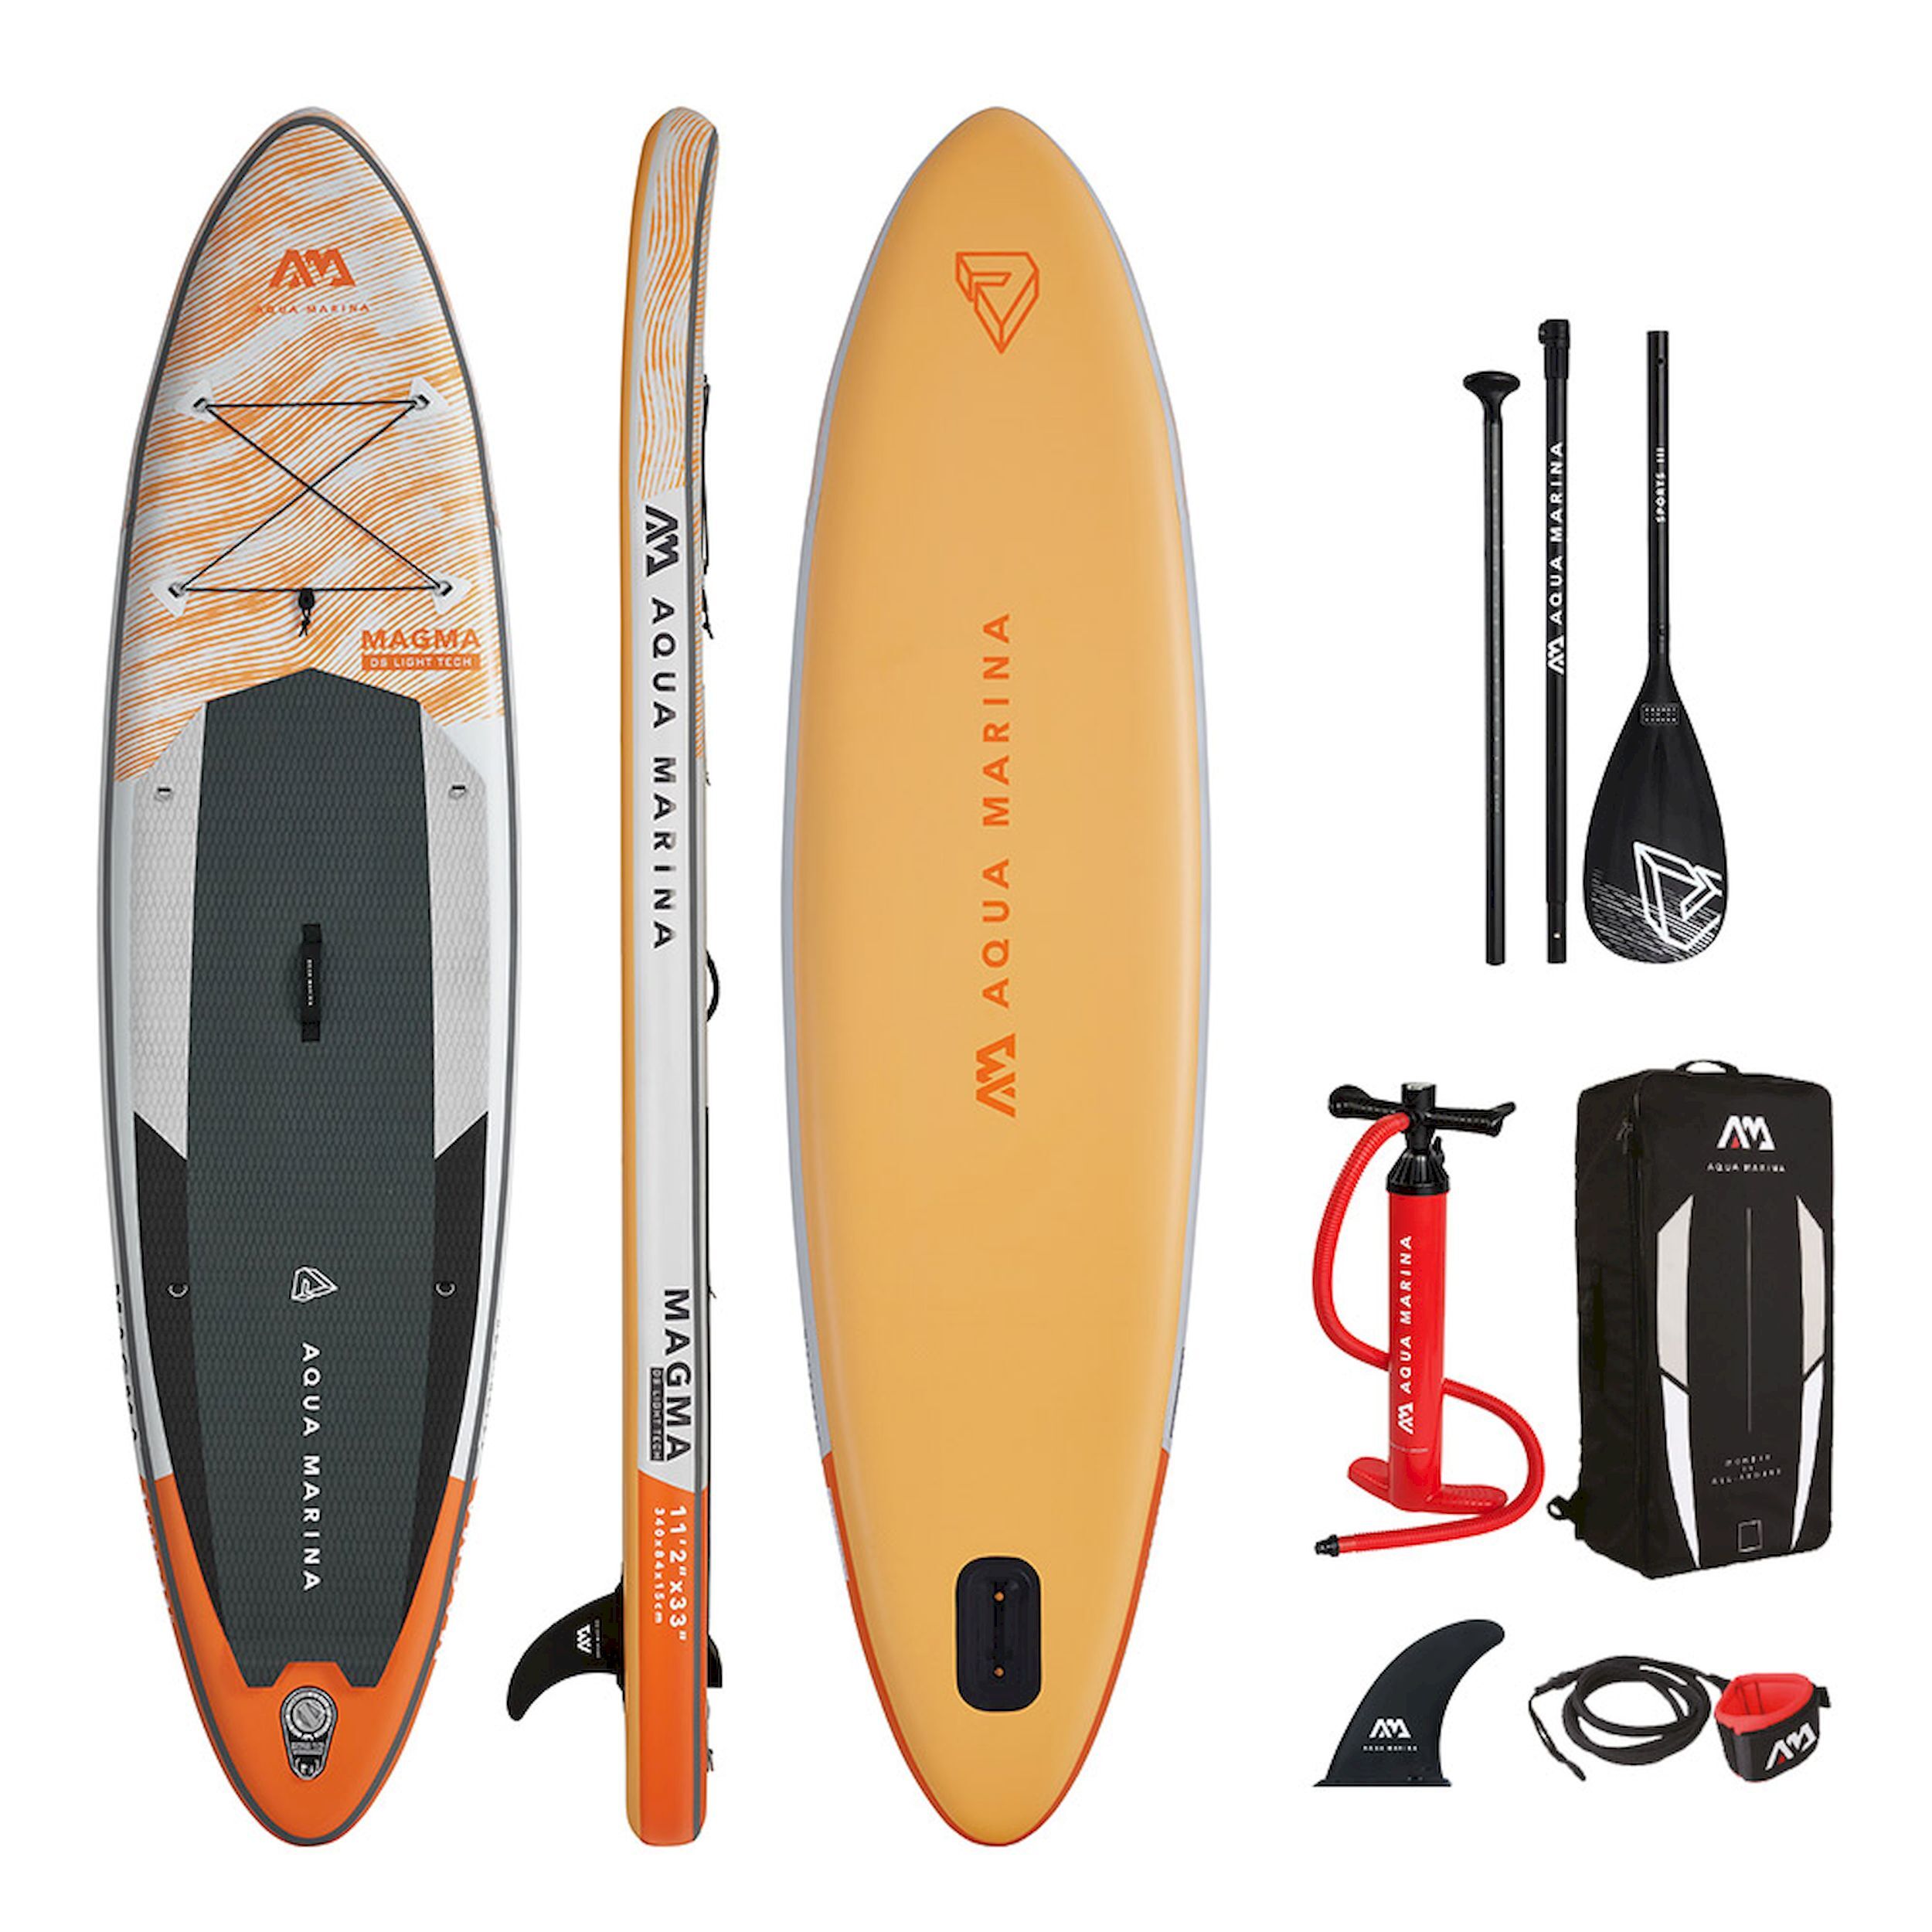 Aqua Marina Magma - Inflatable paddle board